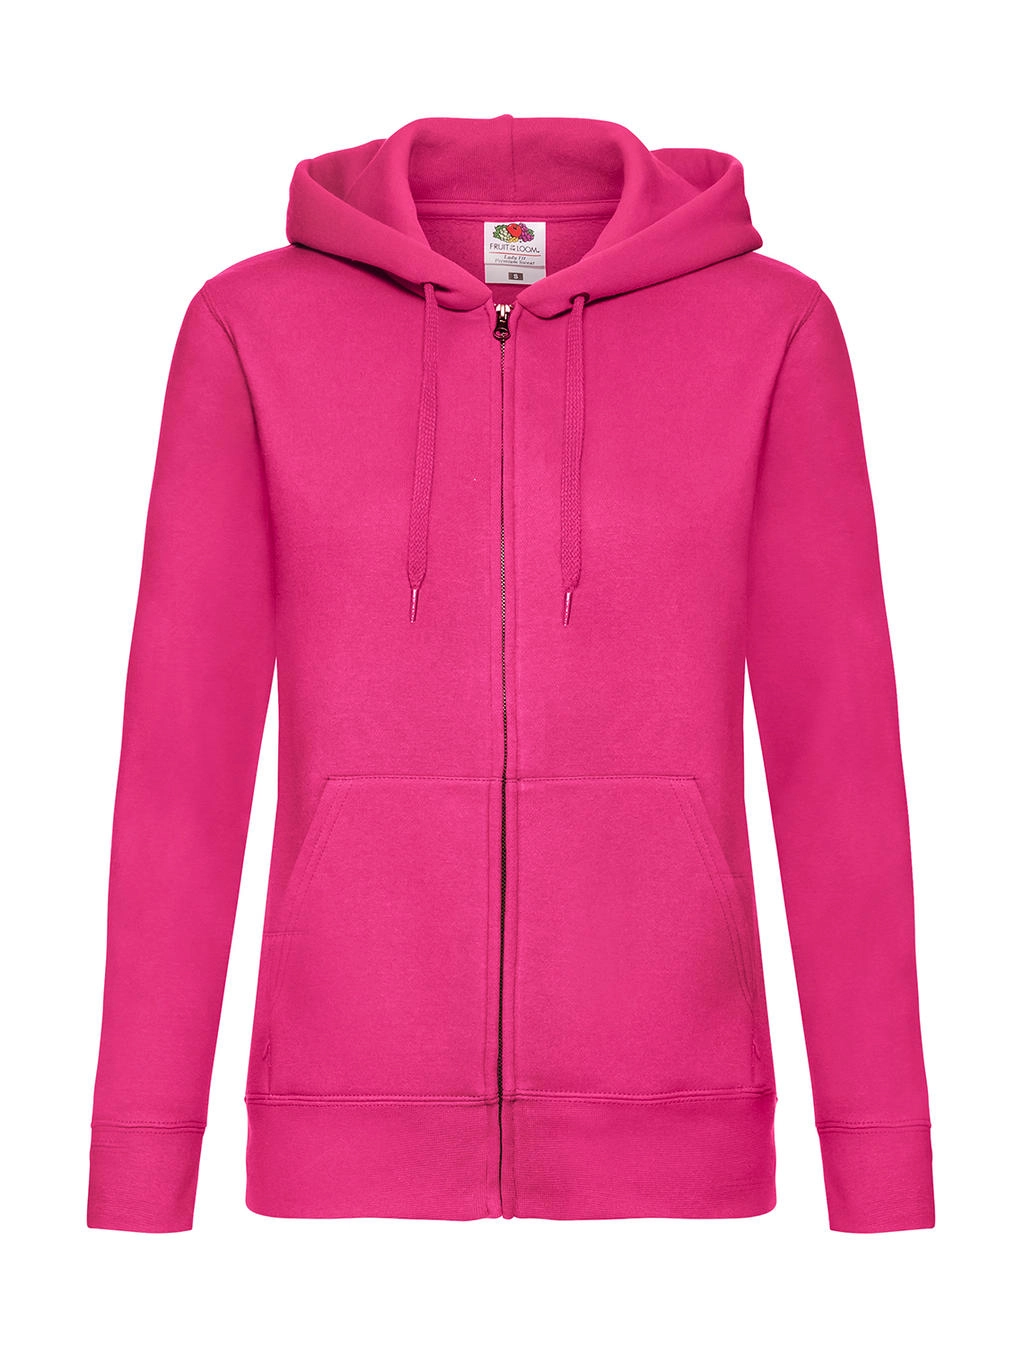 Premium Hooded Sweat Jacket Lady-Fit zum Besticken und Bedrucken in der Farbe Fuchsia mit Ihren Logo, Schriftzug oder Motiv.